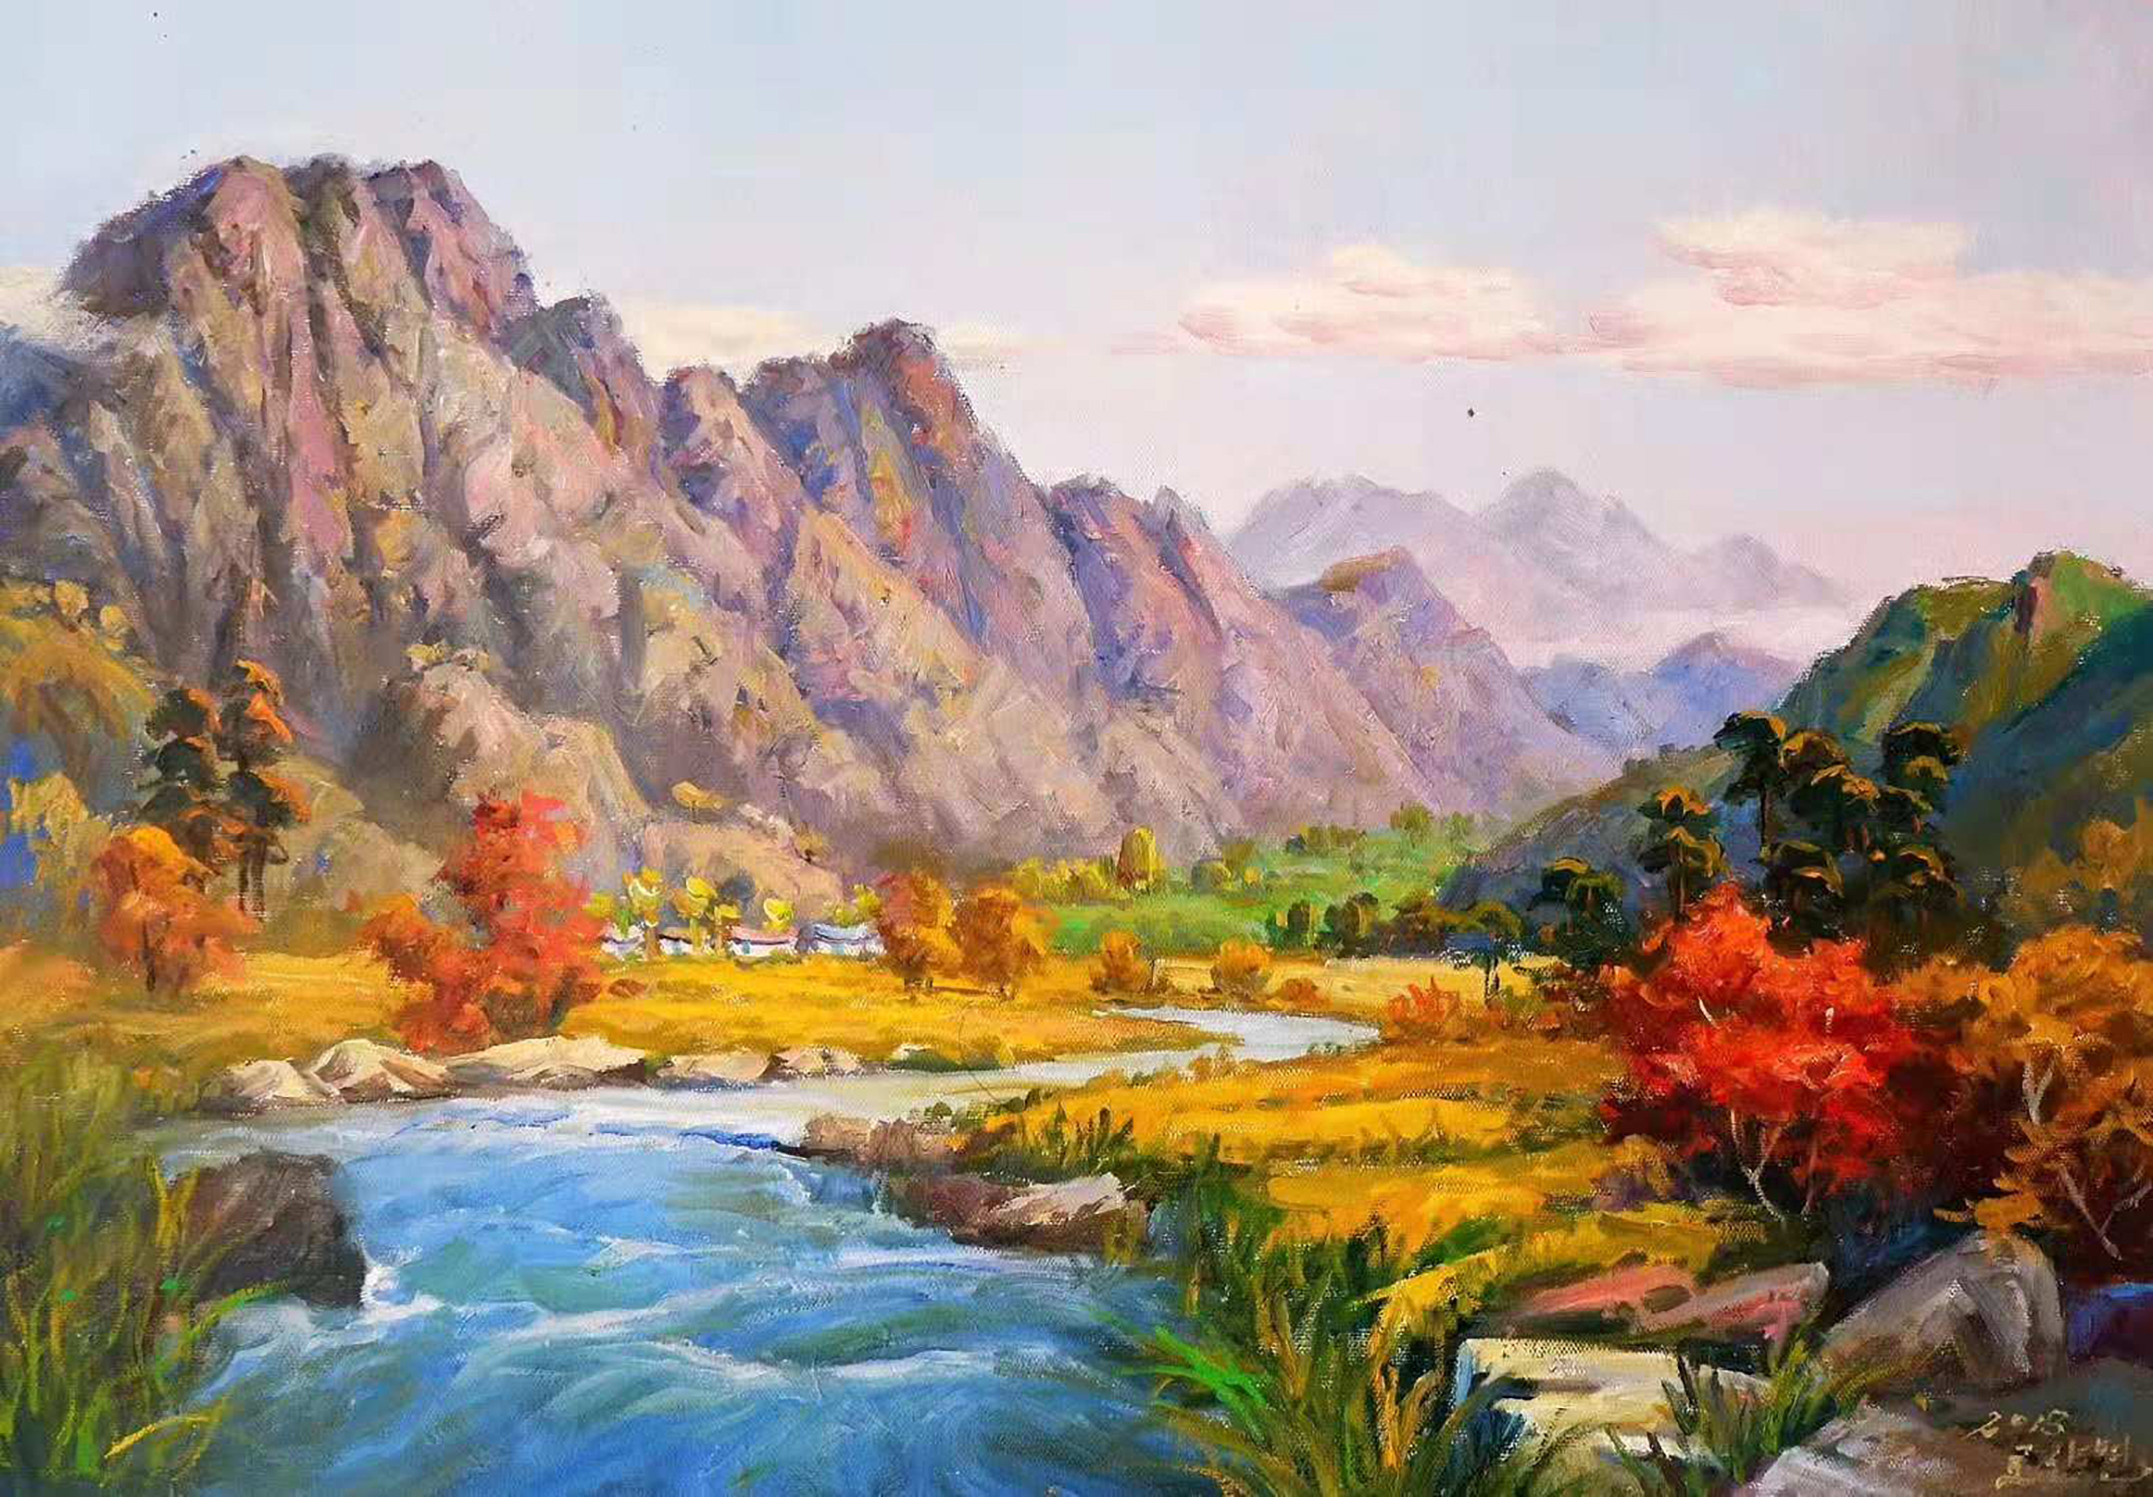 油画风景:一组抒情的油画山水画,值得珍藏